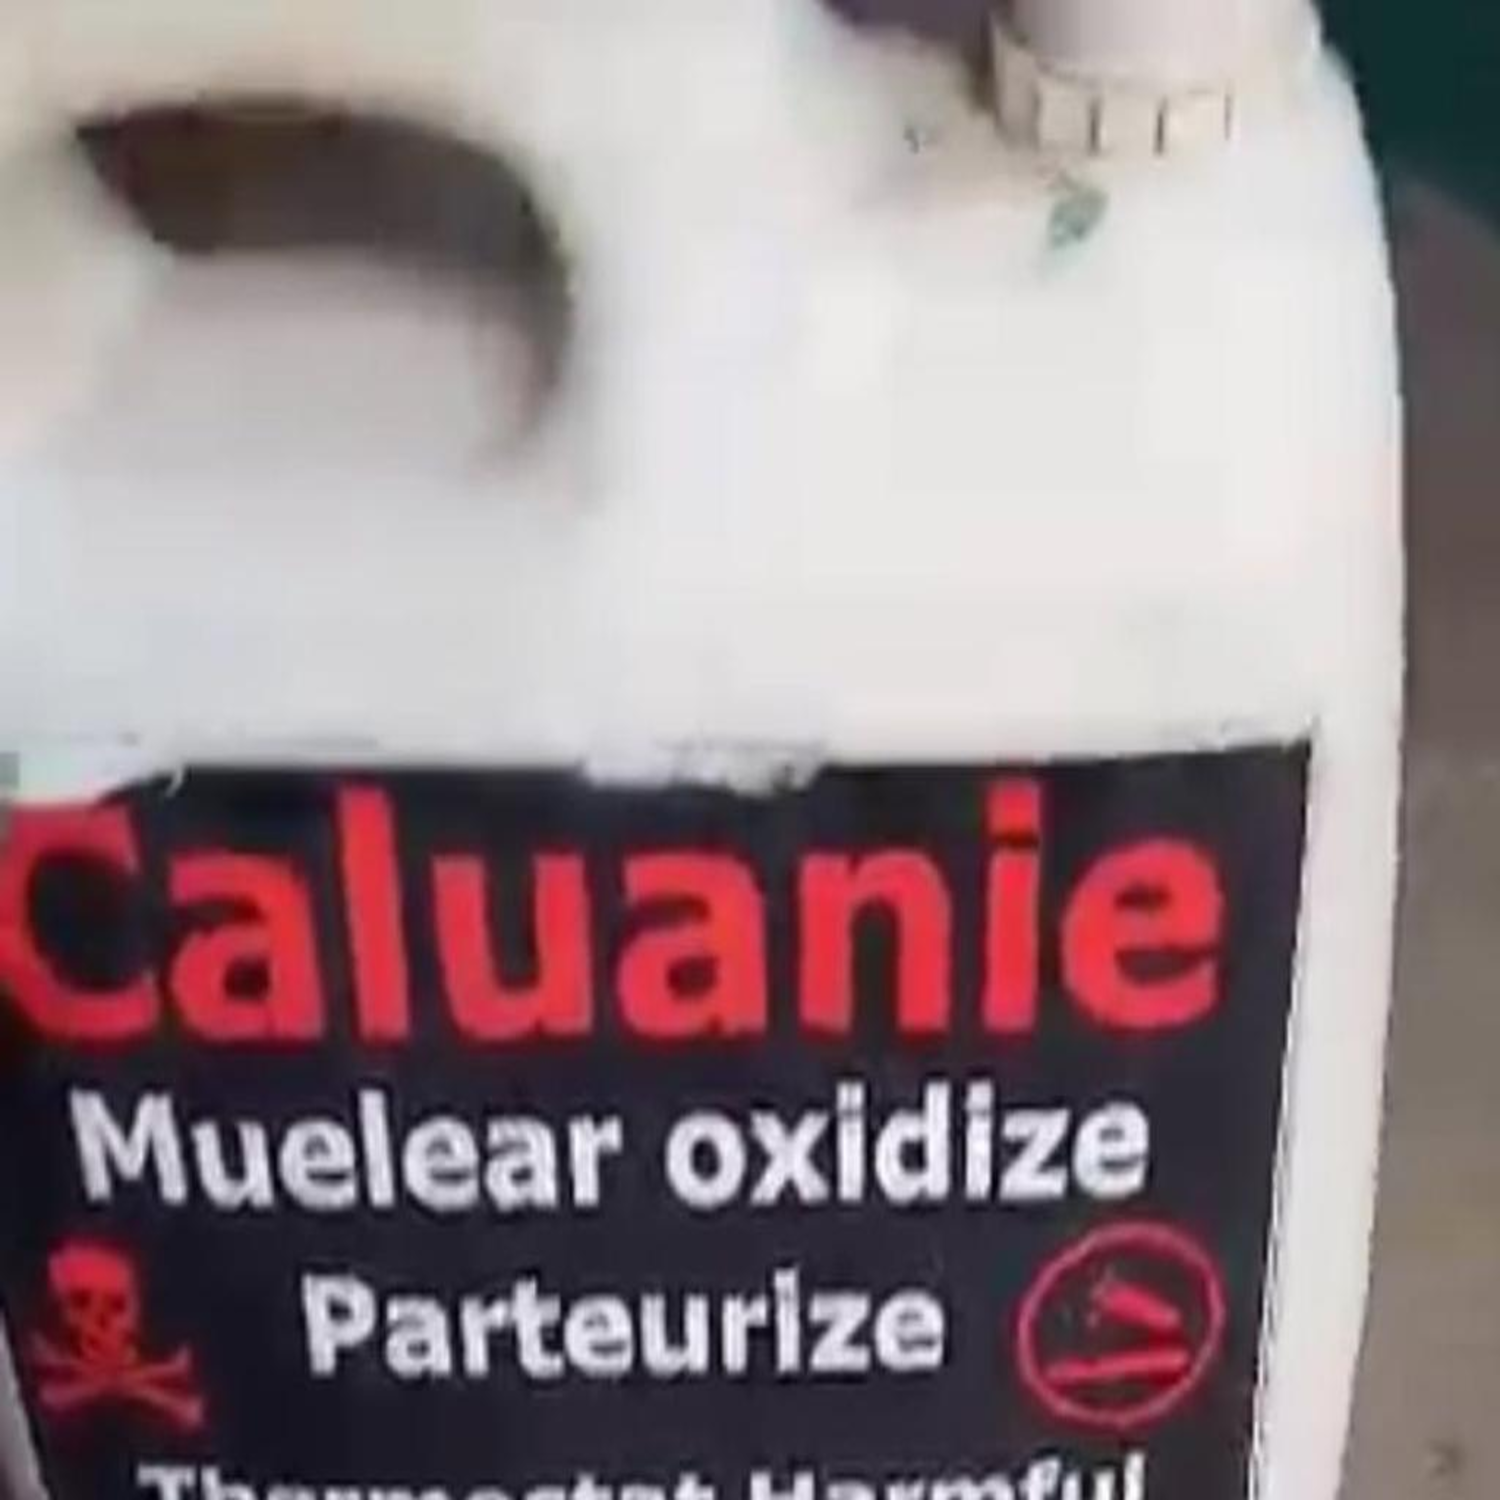 Caluanie Muelear Heavy Water Oxidize